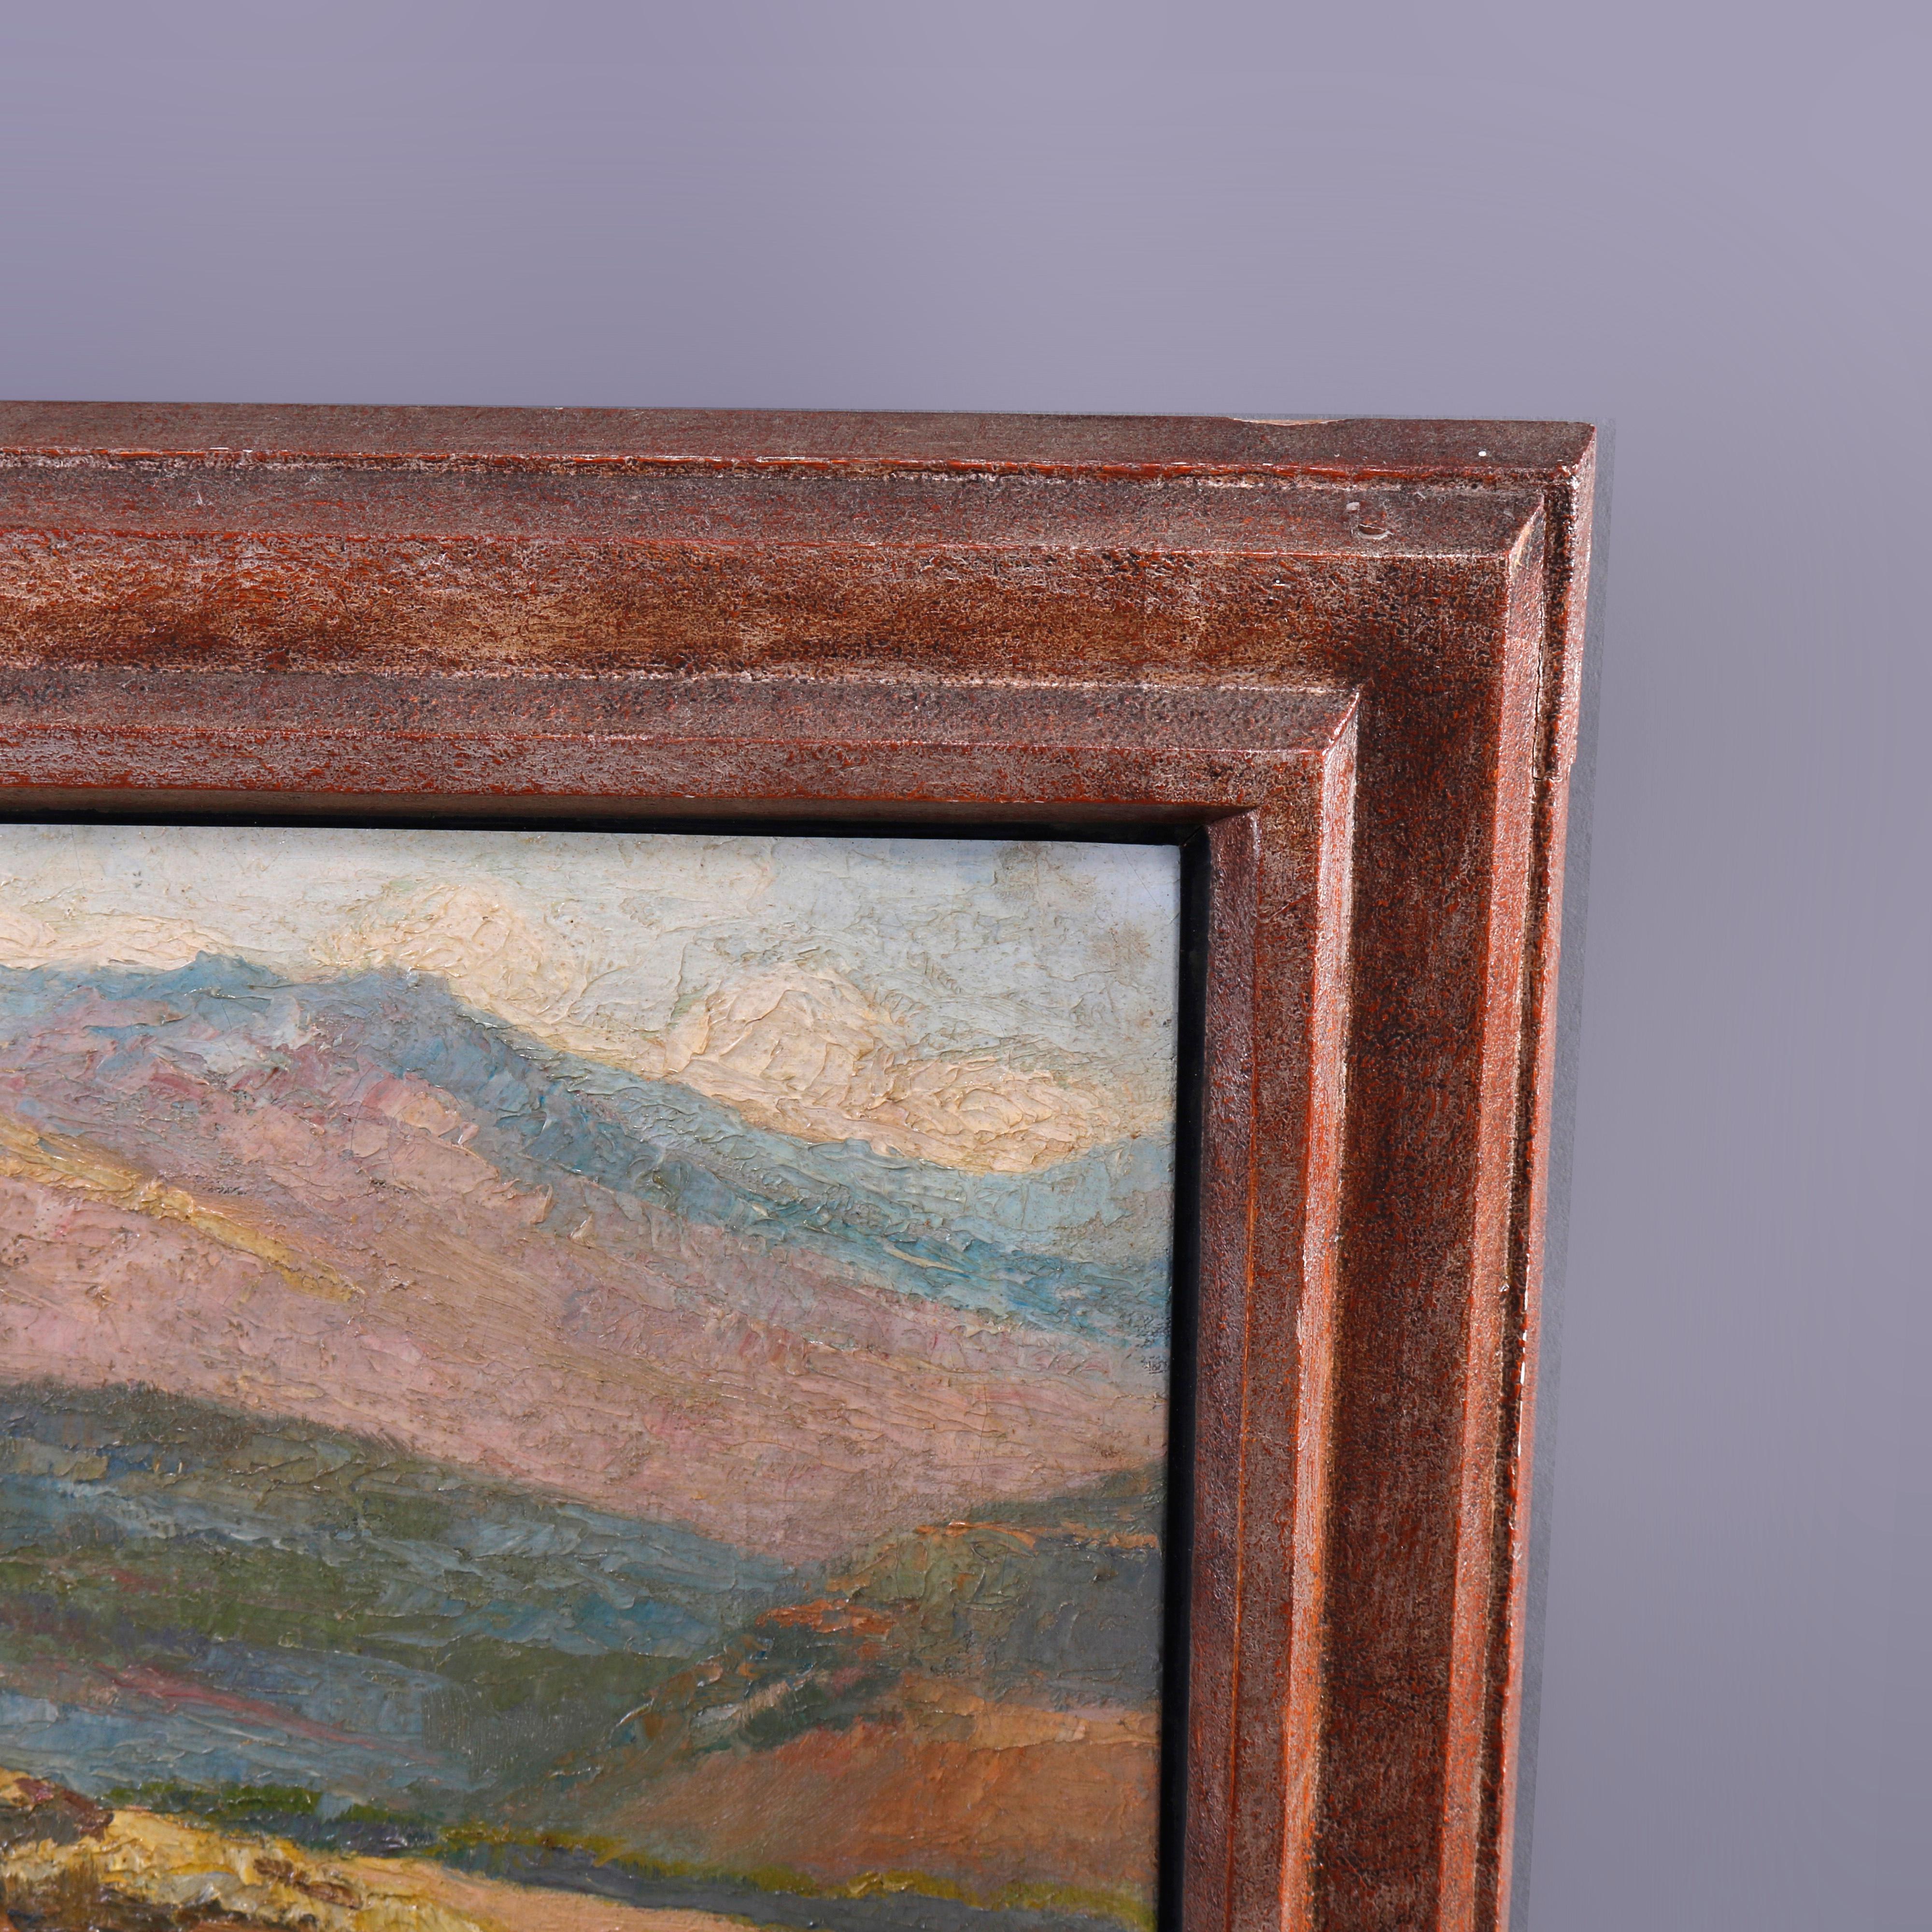 Canvas Antique Impressionist Ca Landscape Painting Signed Marion Kavanagh Wachtel c1930